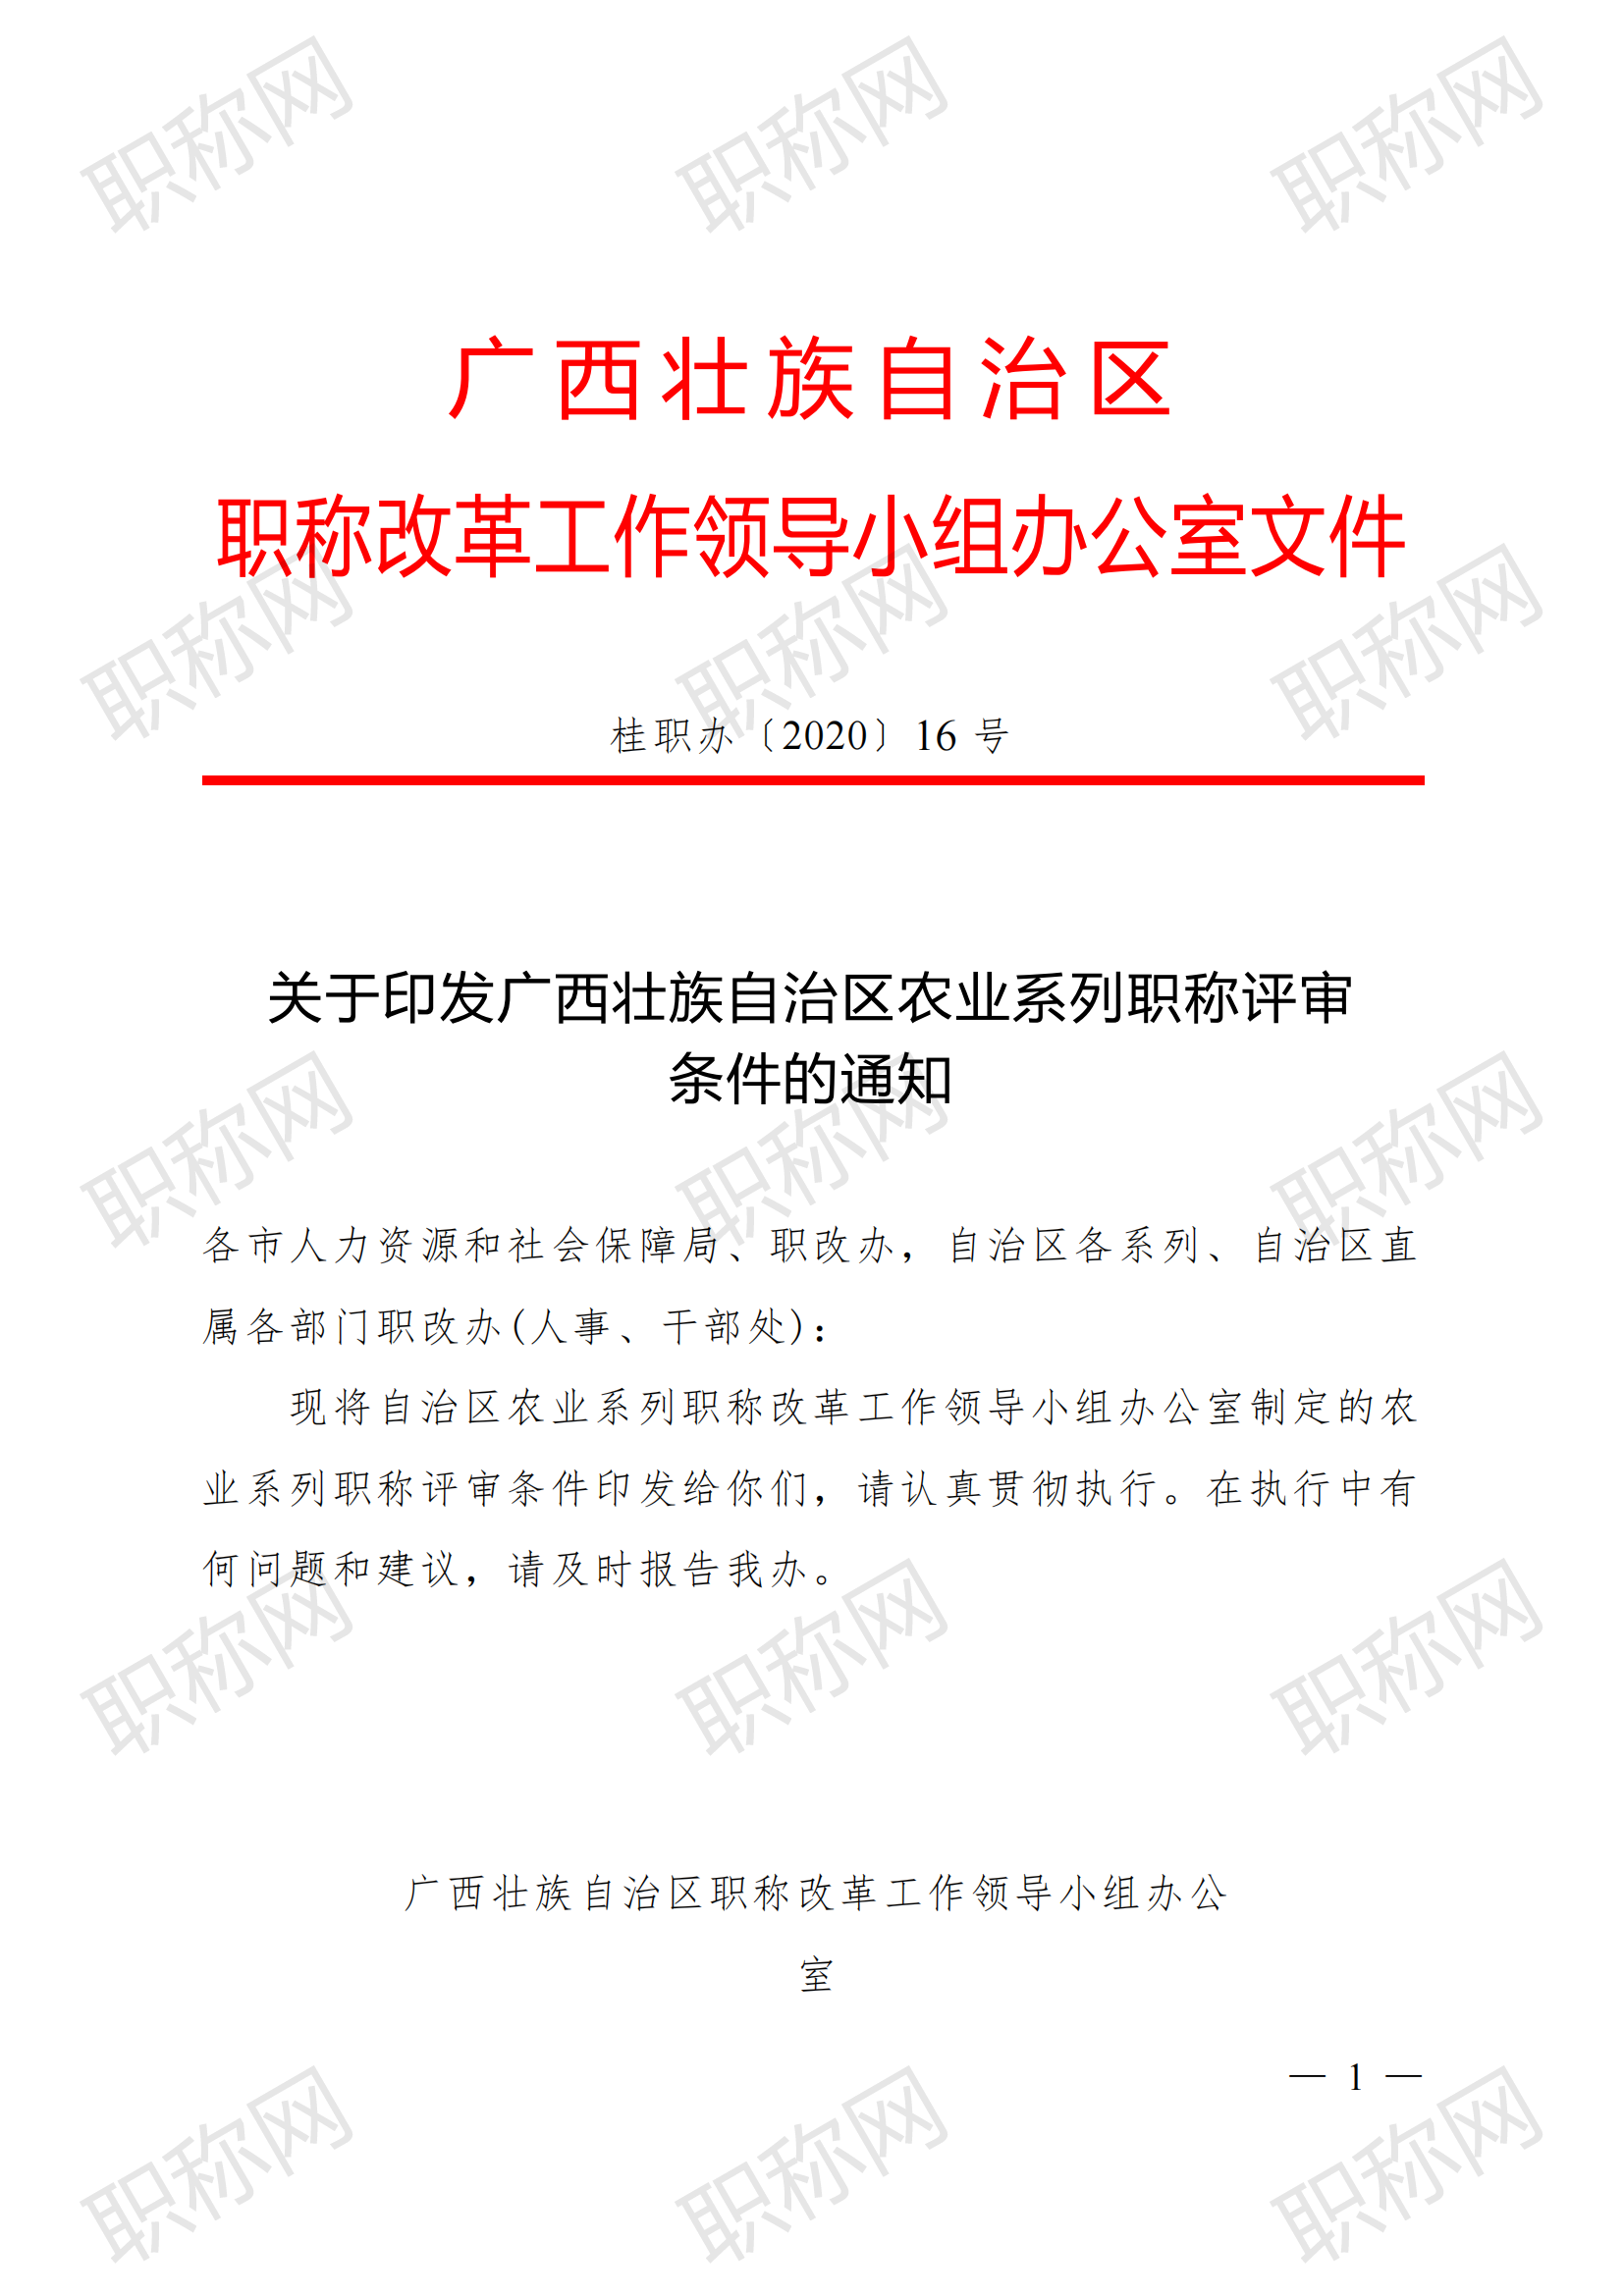 关于印发广西壮族自治区农业系列职称评审条件的通知(桂职办〔2020〕16号)_00.png